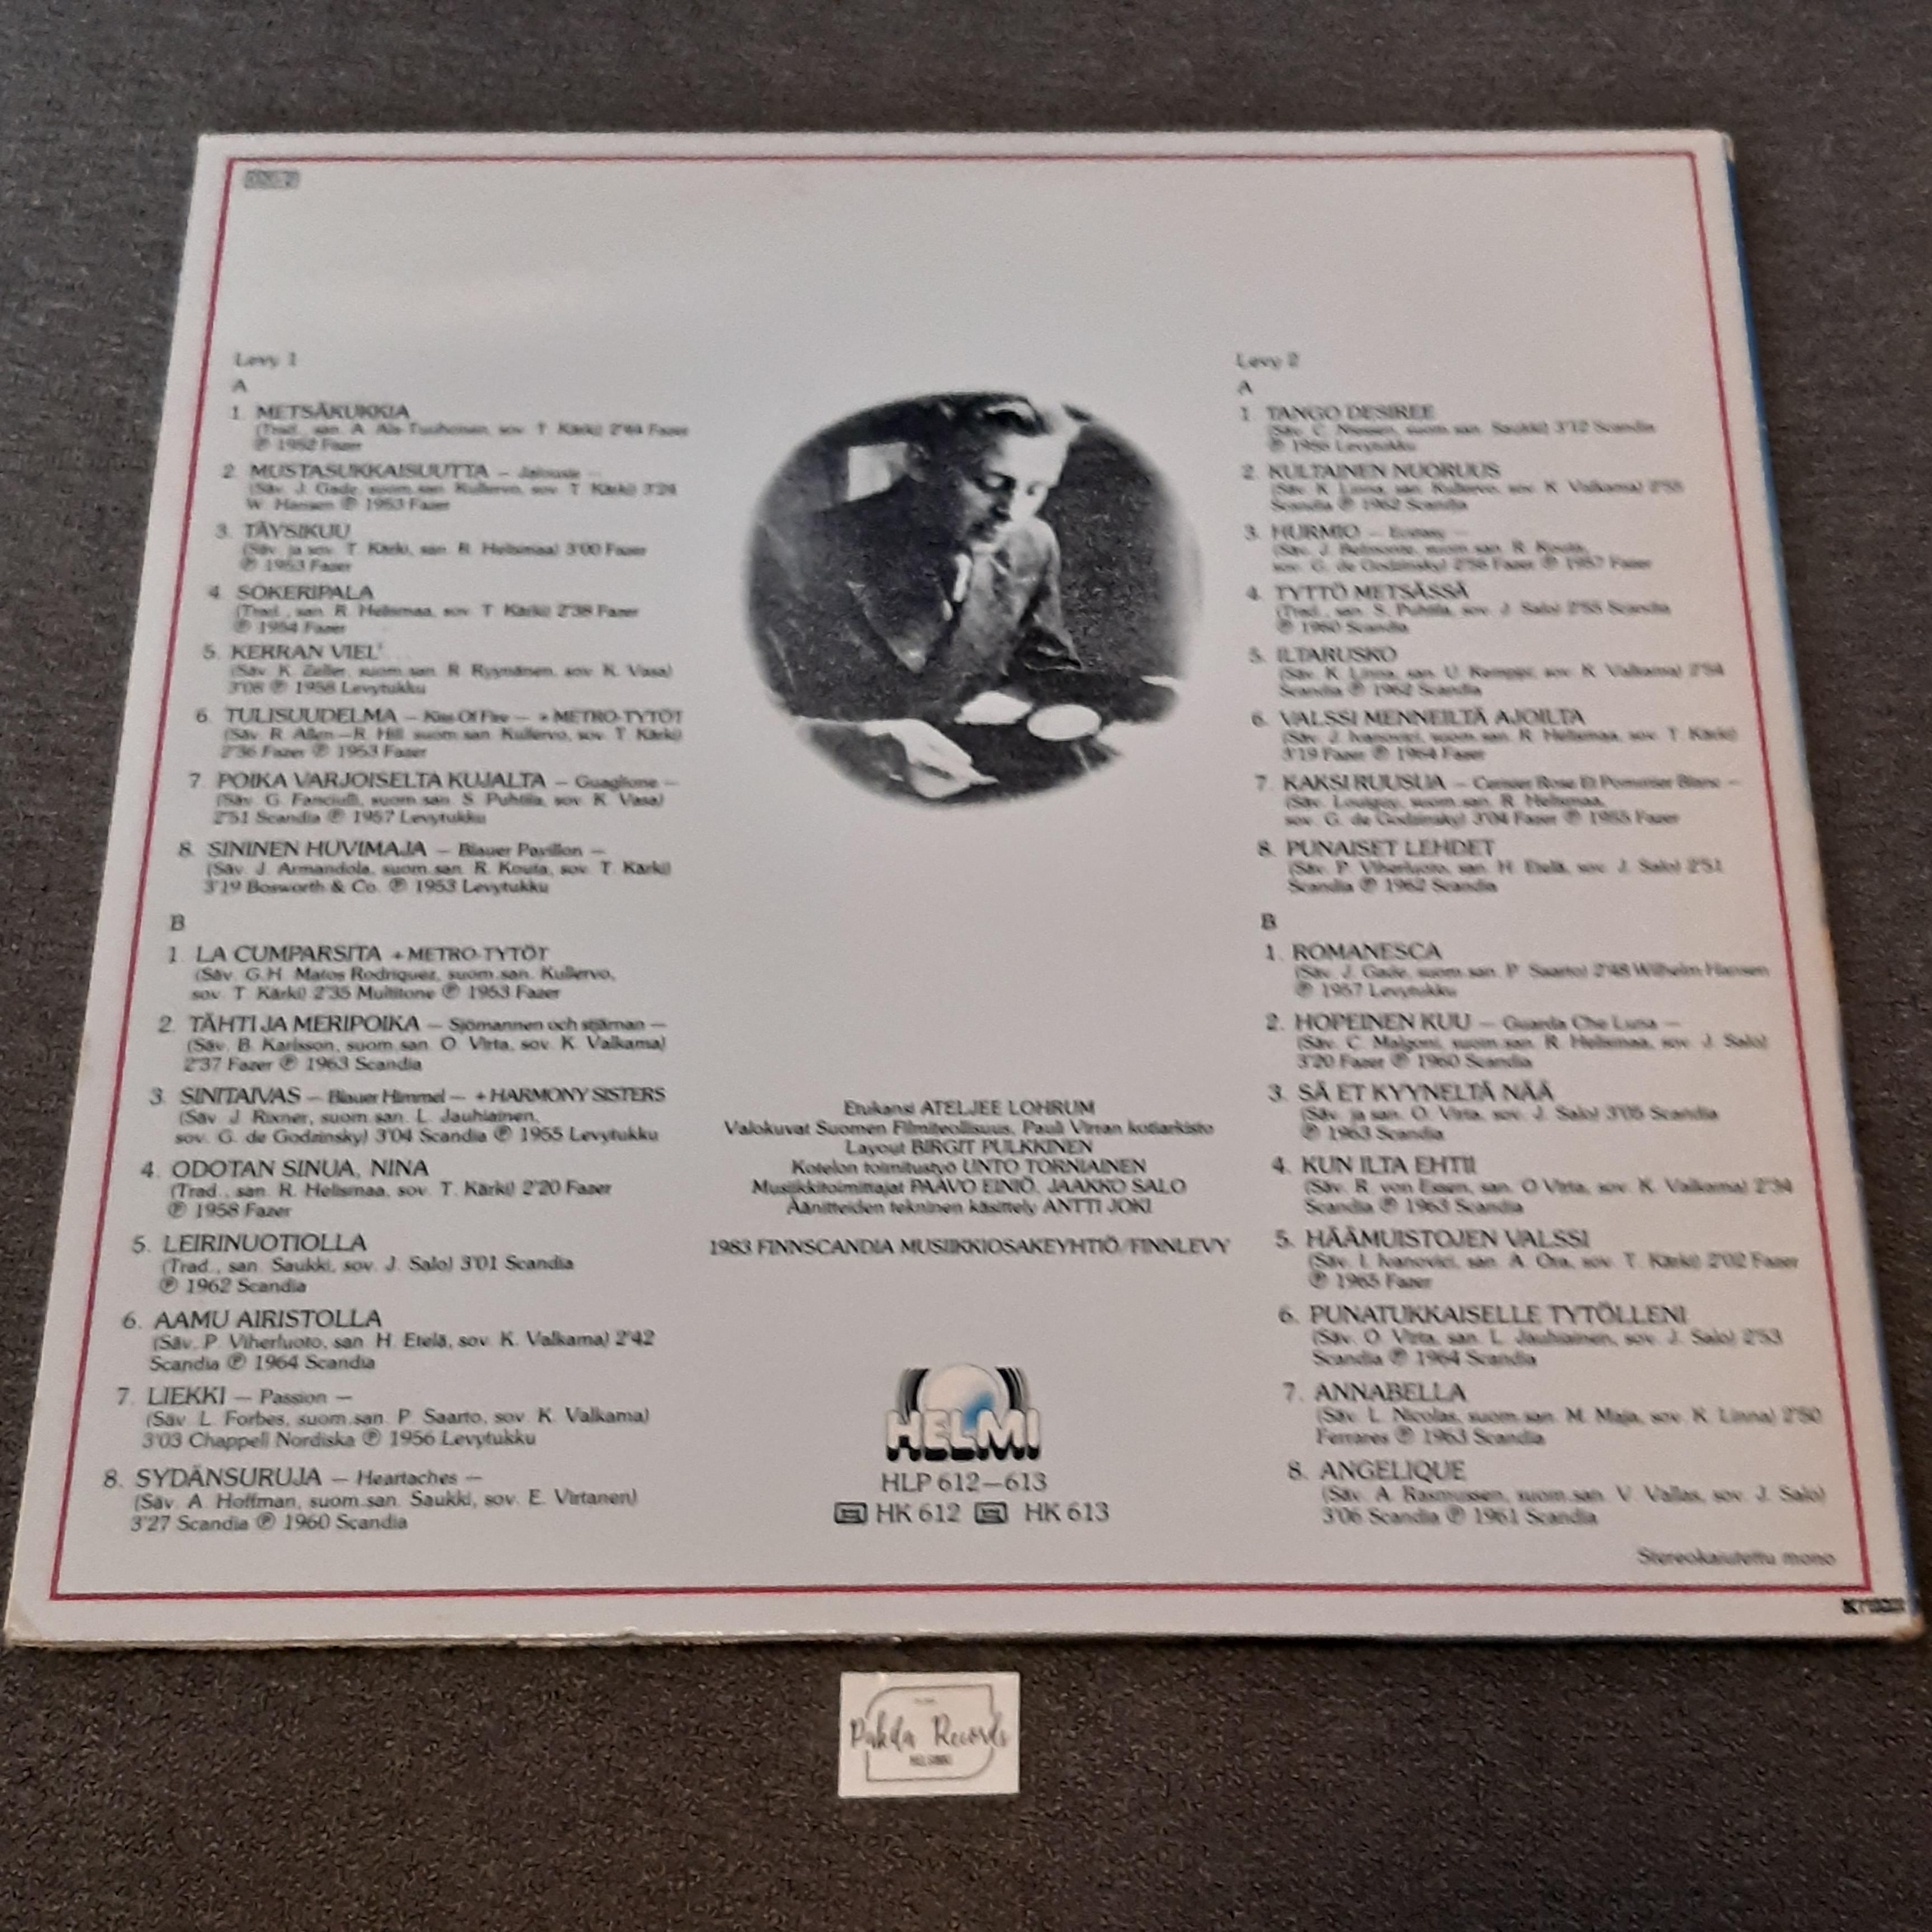 Olavi Virta - Sinitaivas 32 tunnetuinta - 2 LP (käytetty)